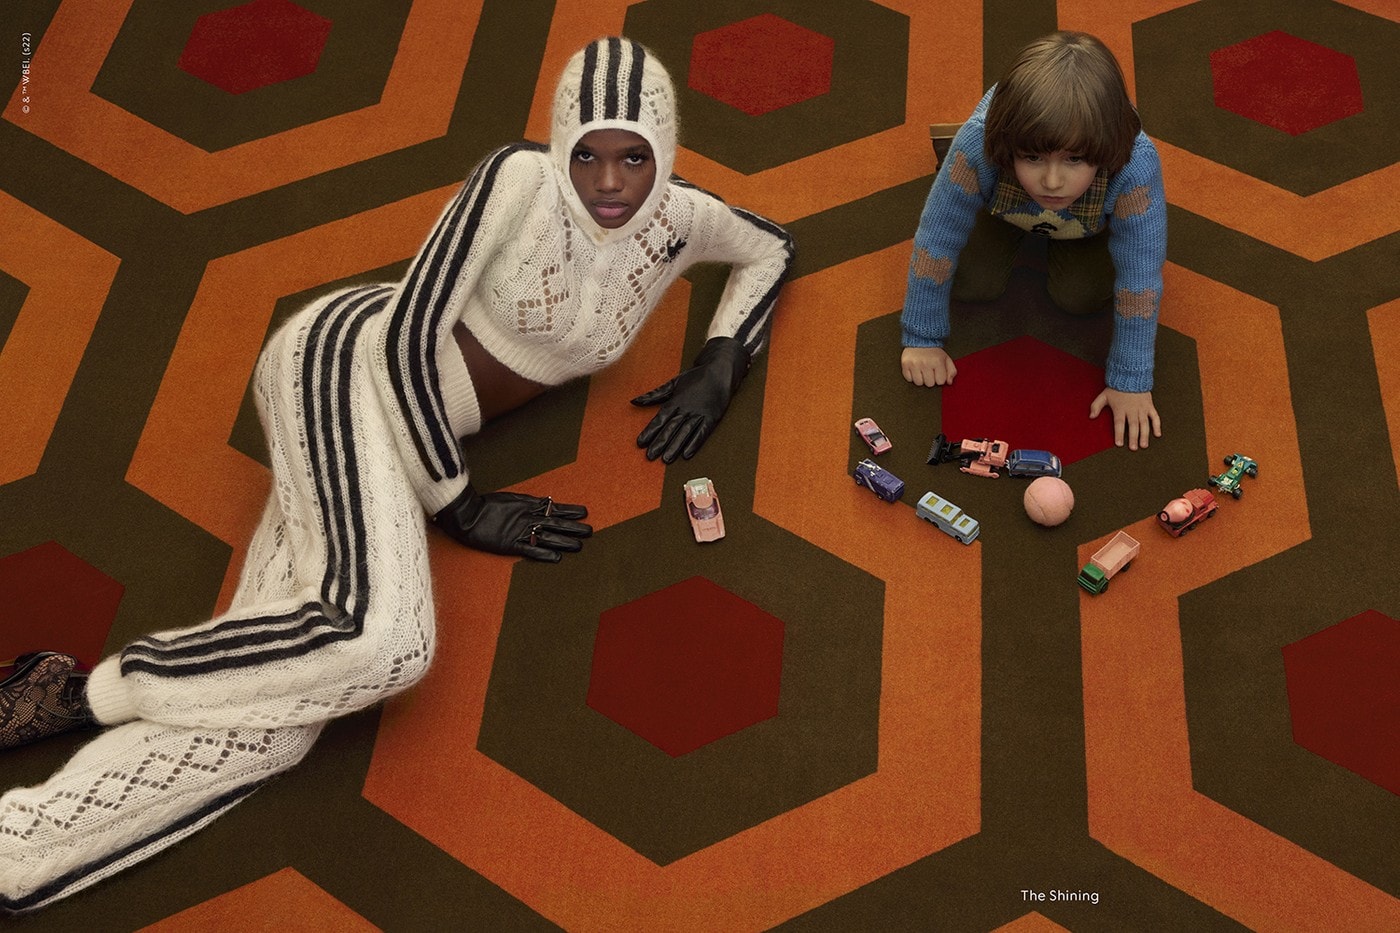 Gucci 最新形象广告向 Stanley Kubrick《发条橙》、《闪灵》等片致敬